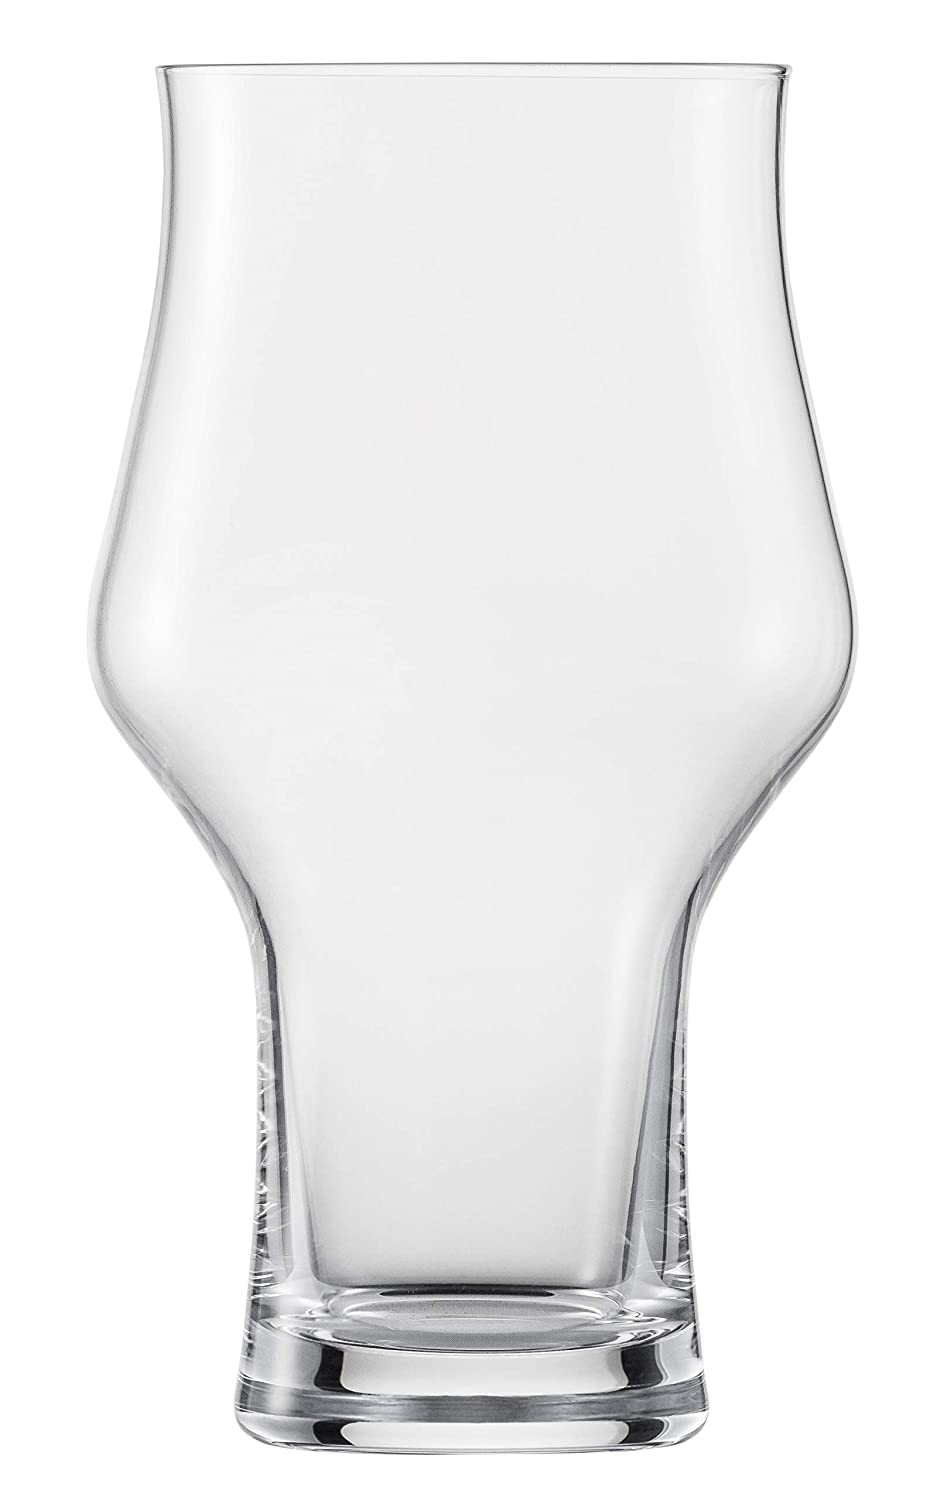 Schott Zwiesel 140219 Beer Glasses Transparent Height 156 mm diameter 88 mm